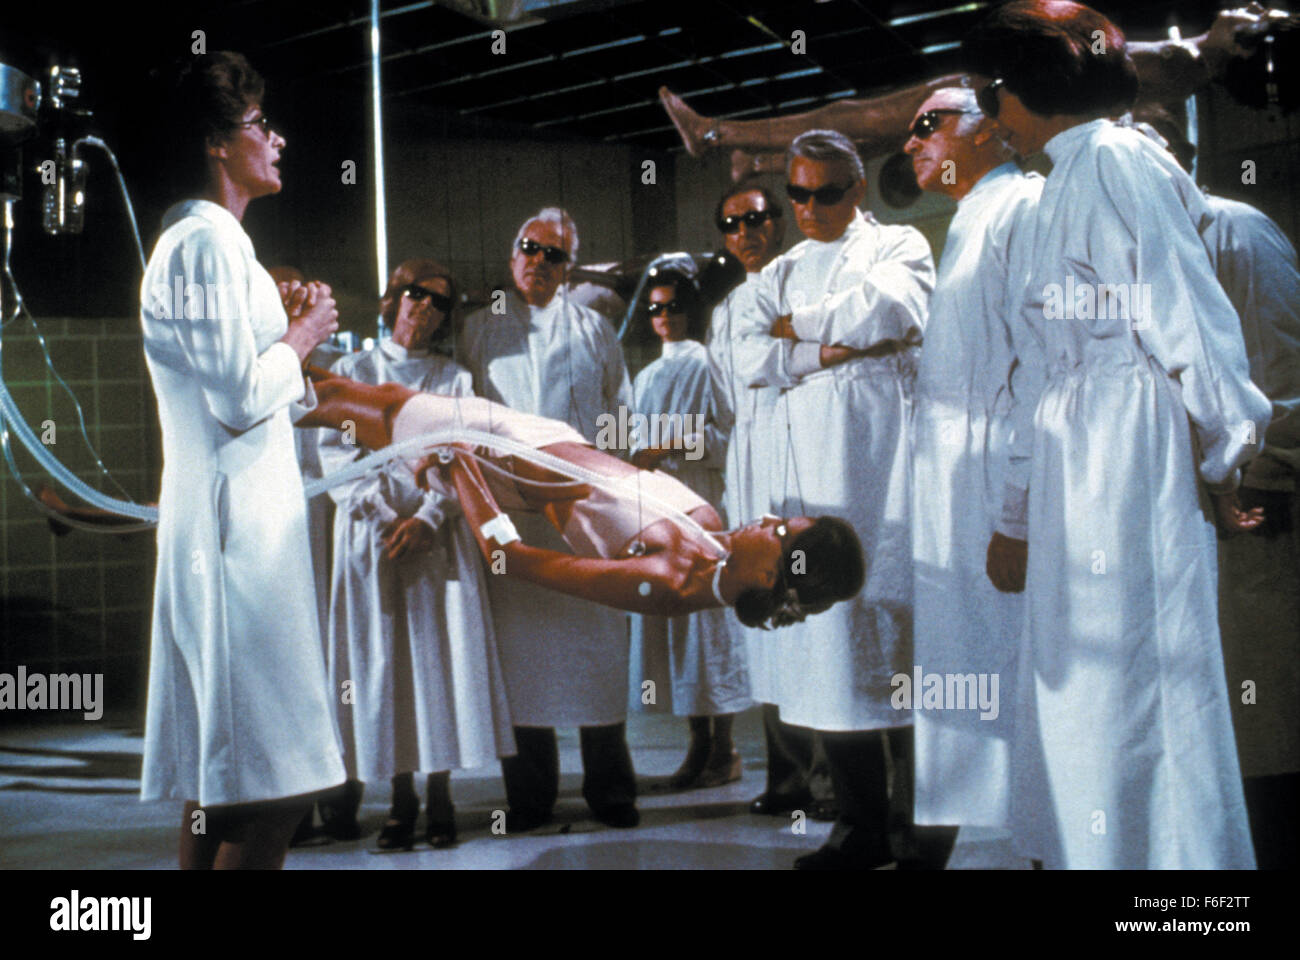 Jan 06, 1978; Los Angeles, CA, Stati Uniti d'America; scena del mistero film thriller 'Coma' diretto da Michael Crichton. Foto Stock